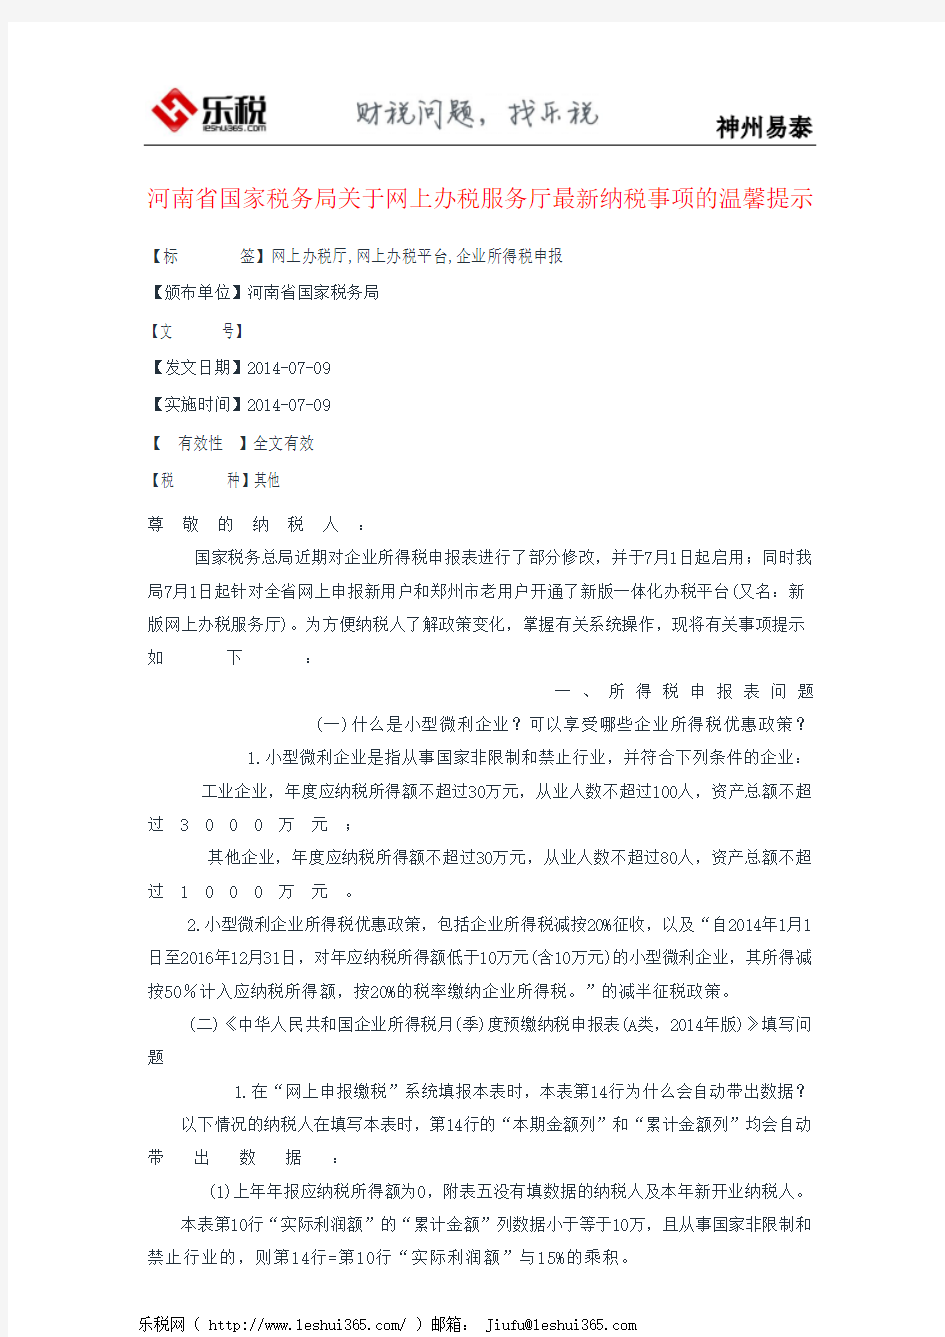 河南省国家税务局关于网上办税服务厅最新纳税事项的温馨提示